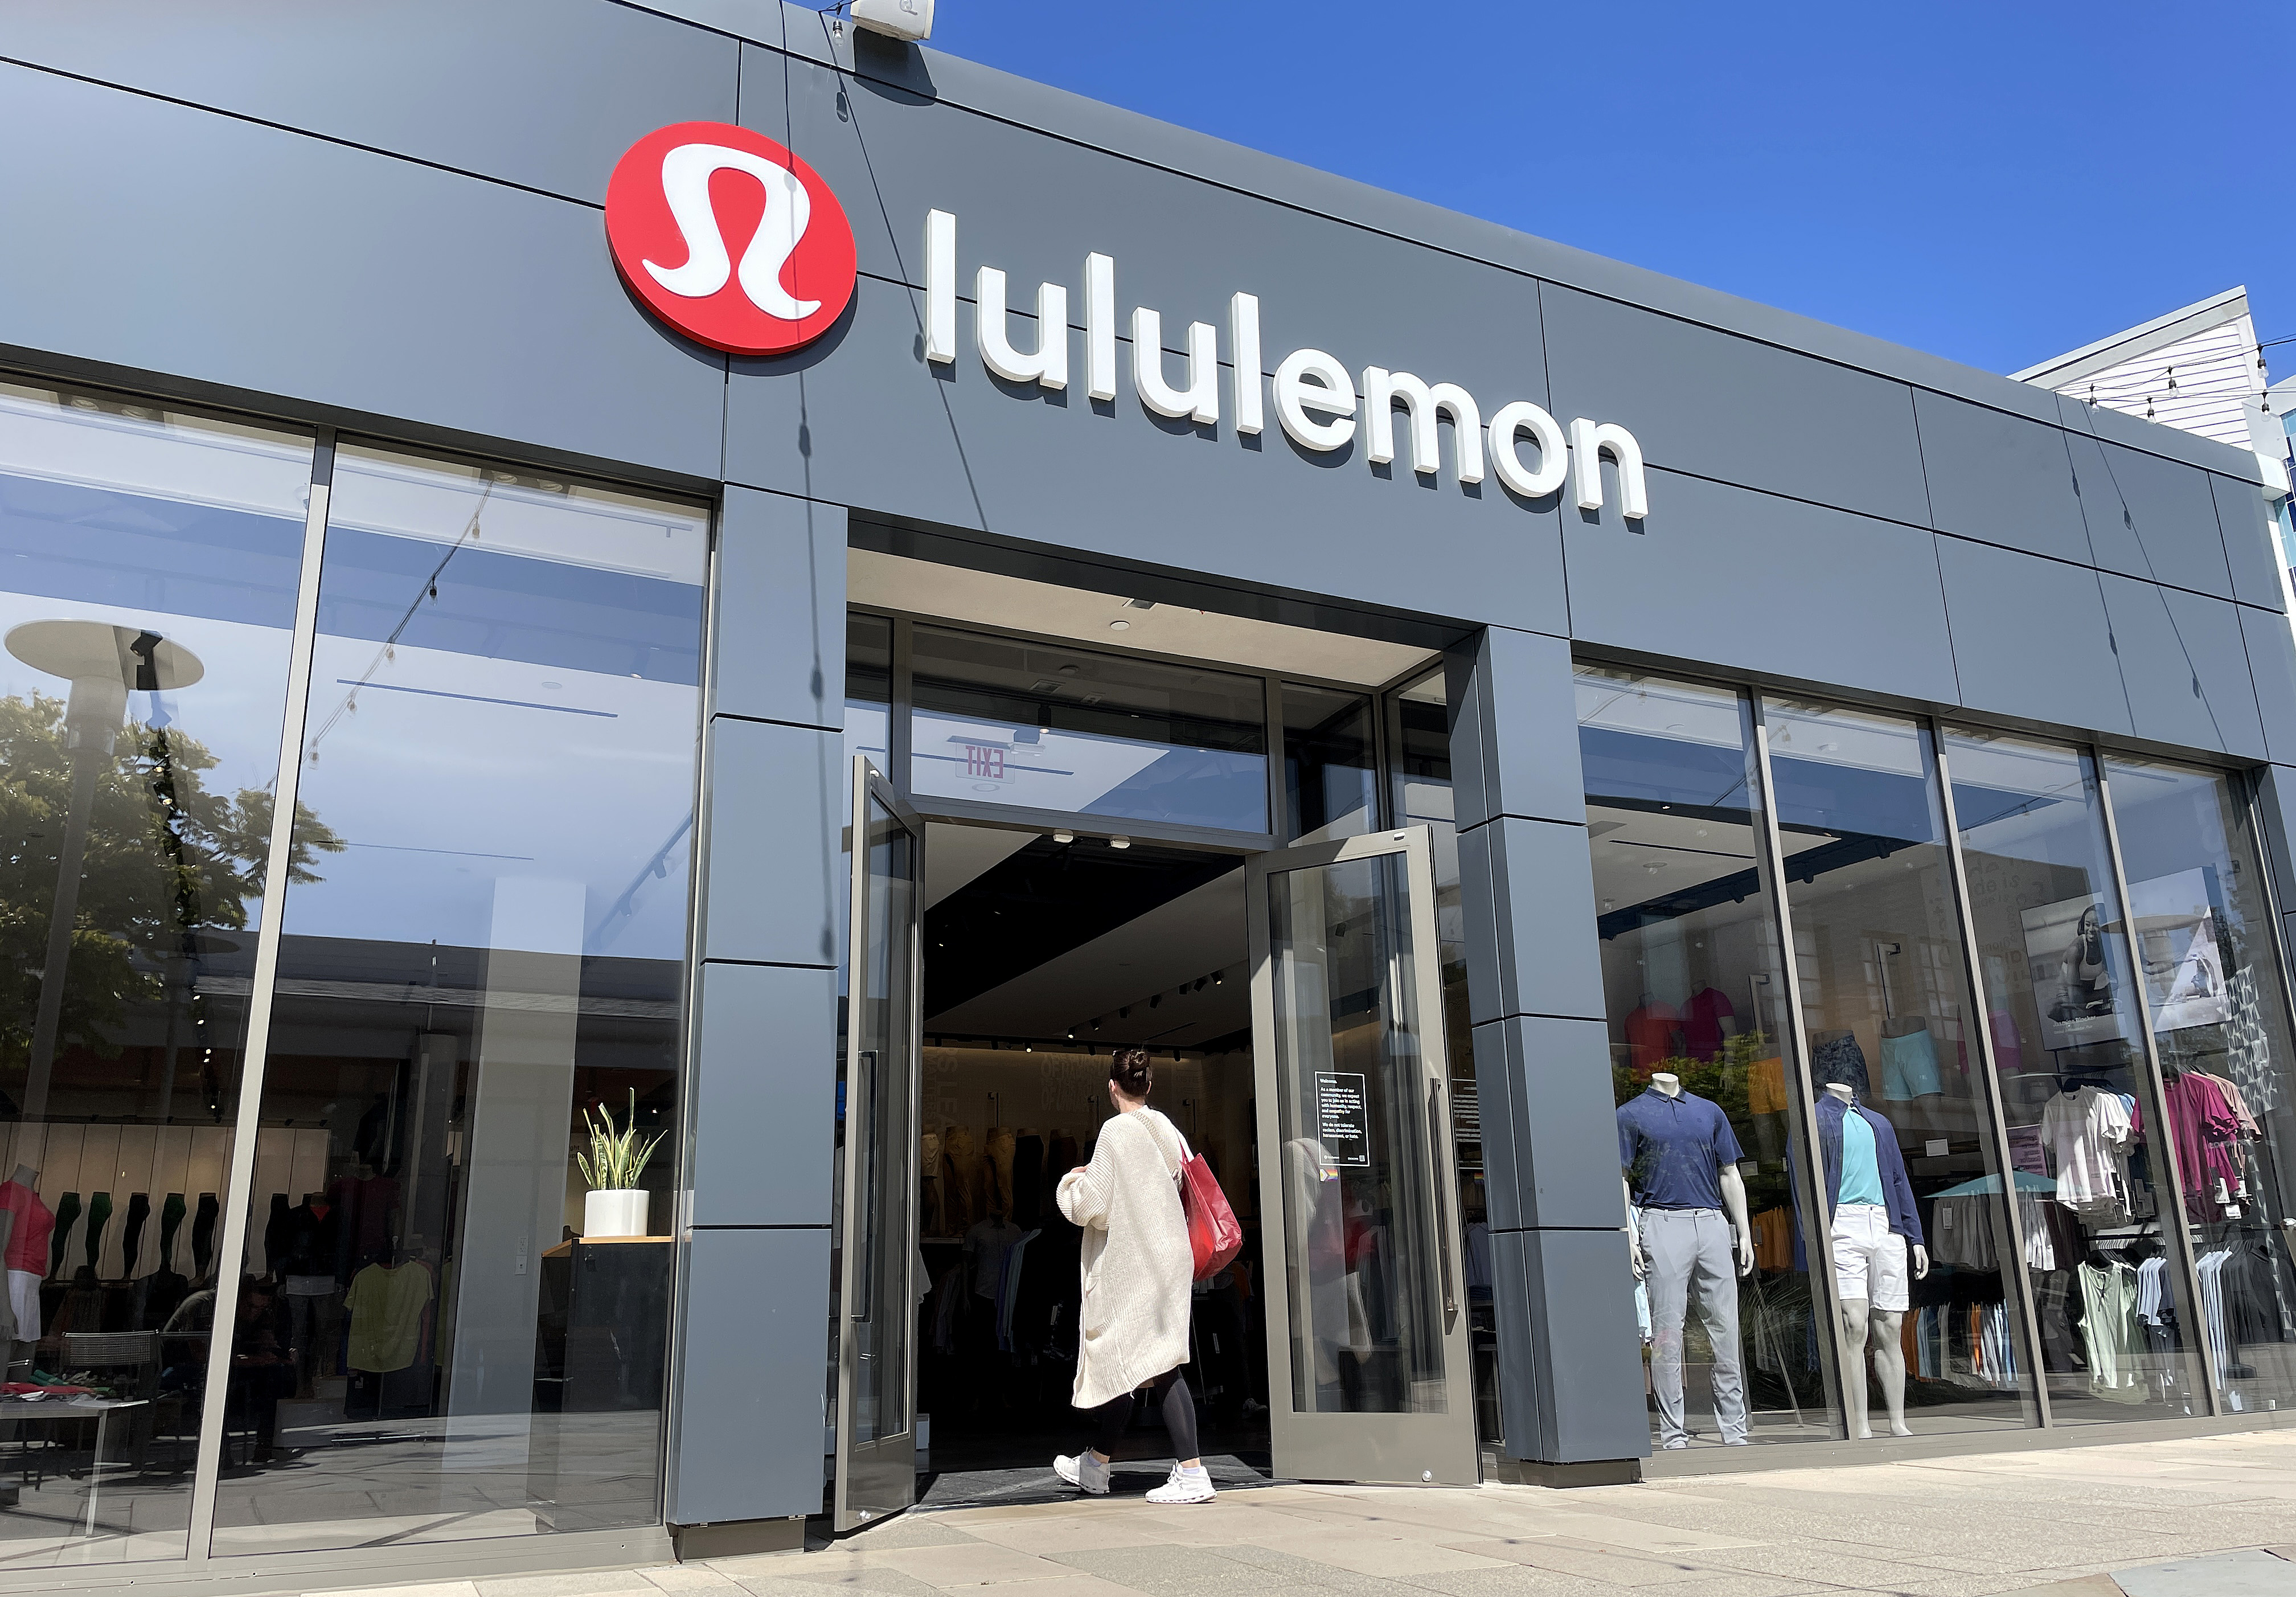 Canadiana Inspires a Lululemon Shop in Edmonton - Azure Magazine